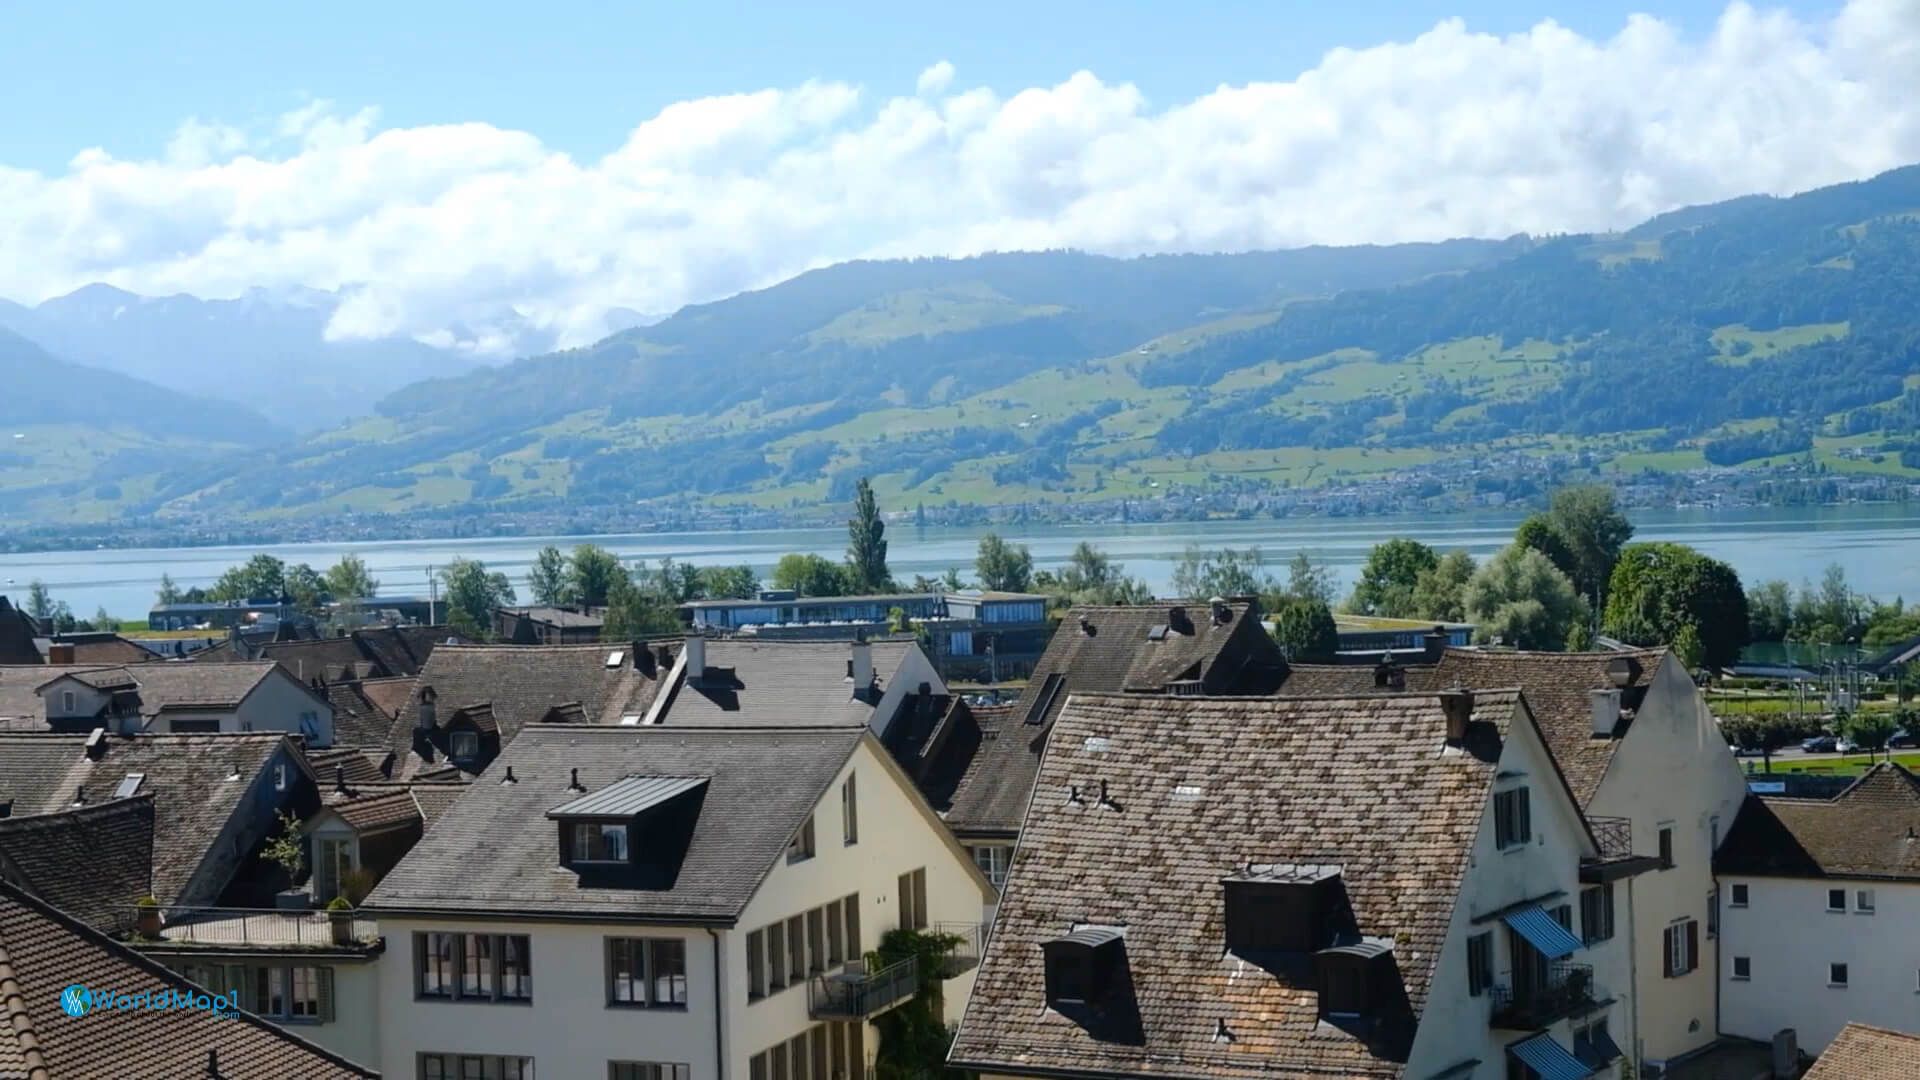 St Gallen and Konstanz Lake